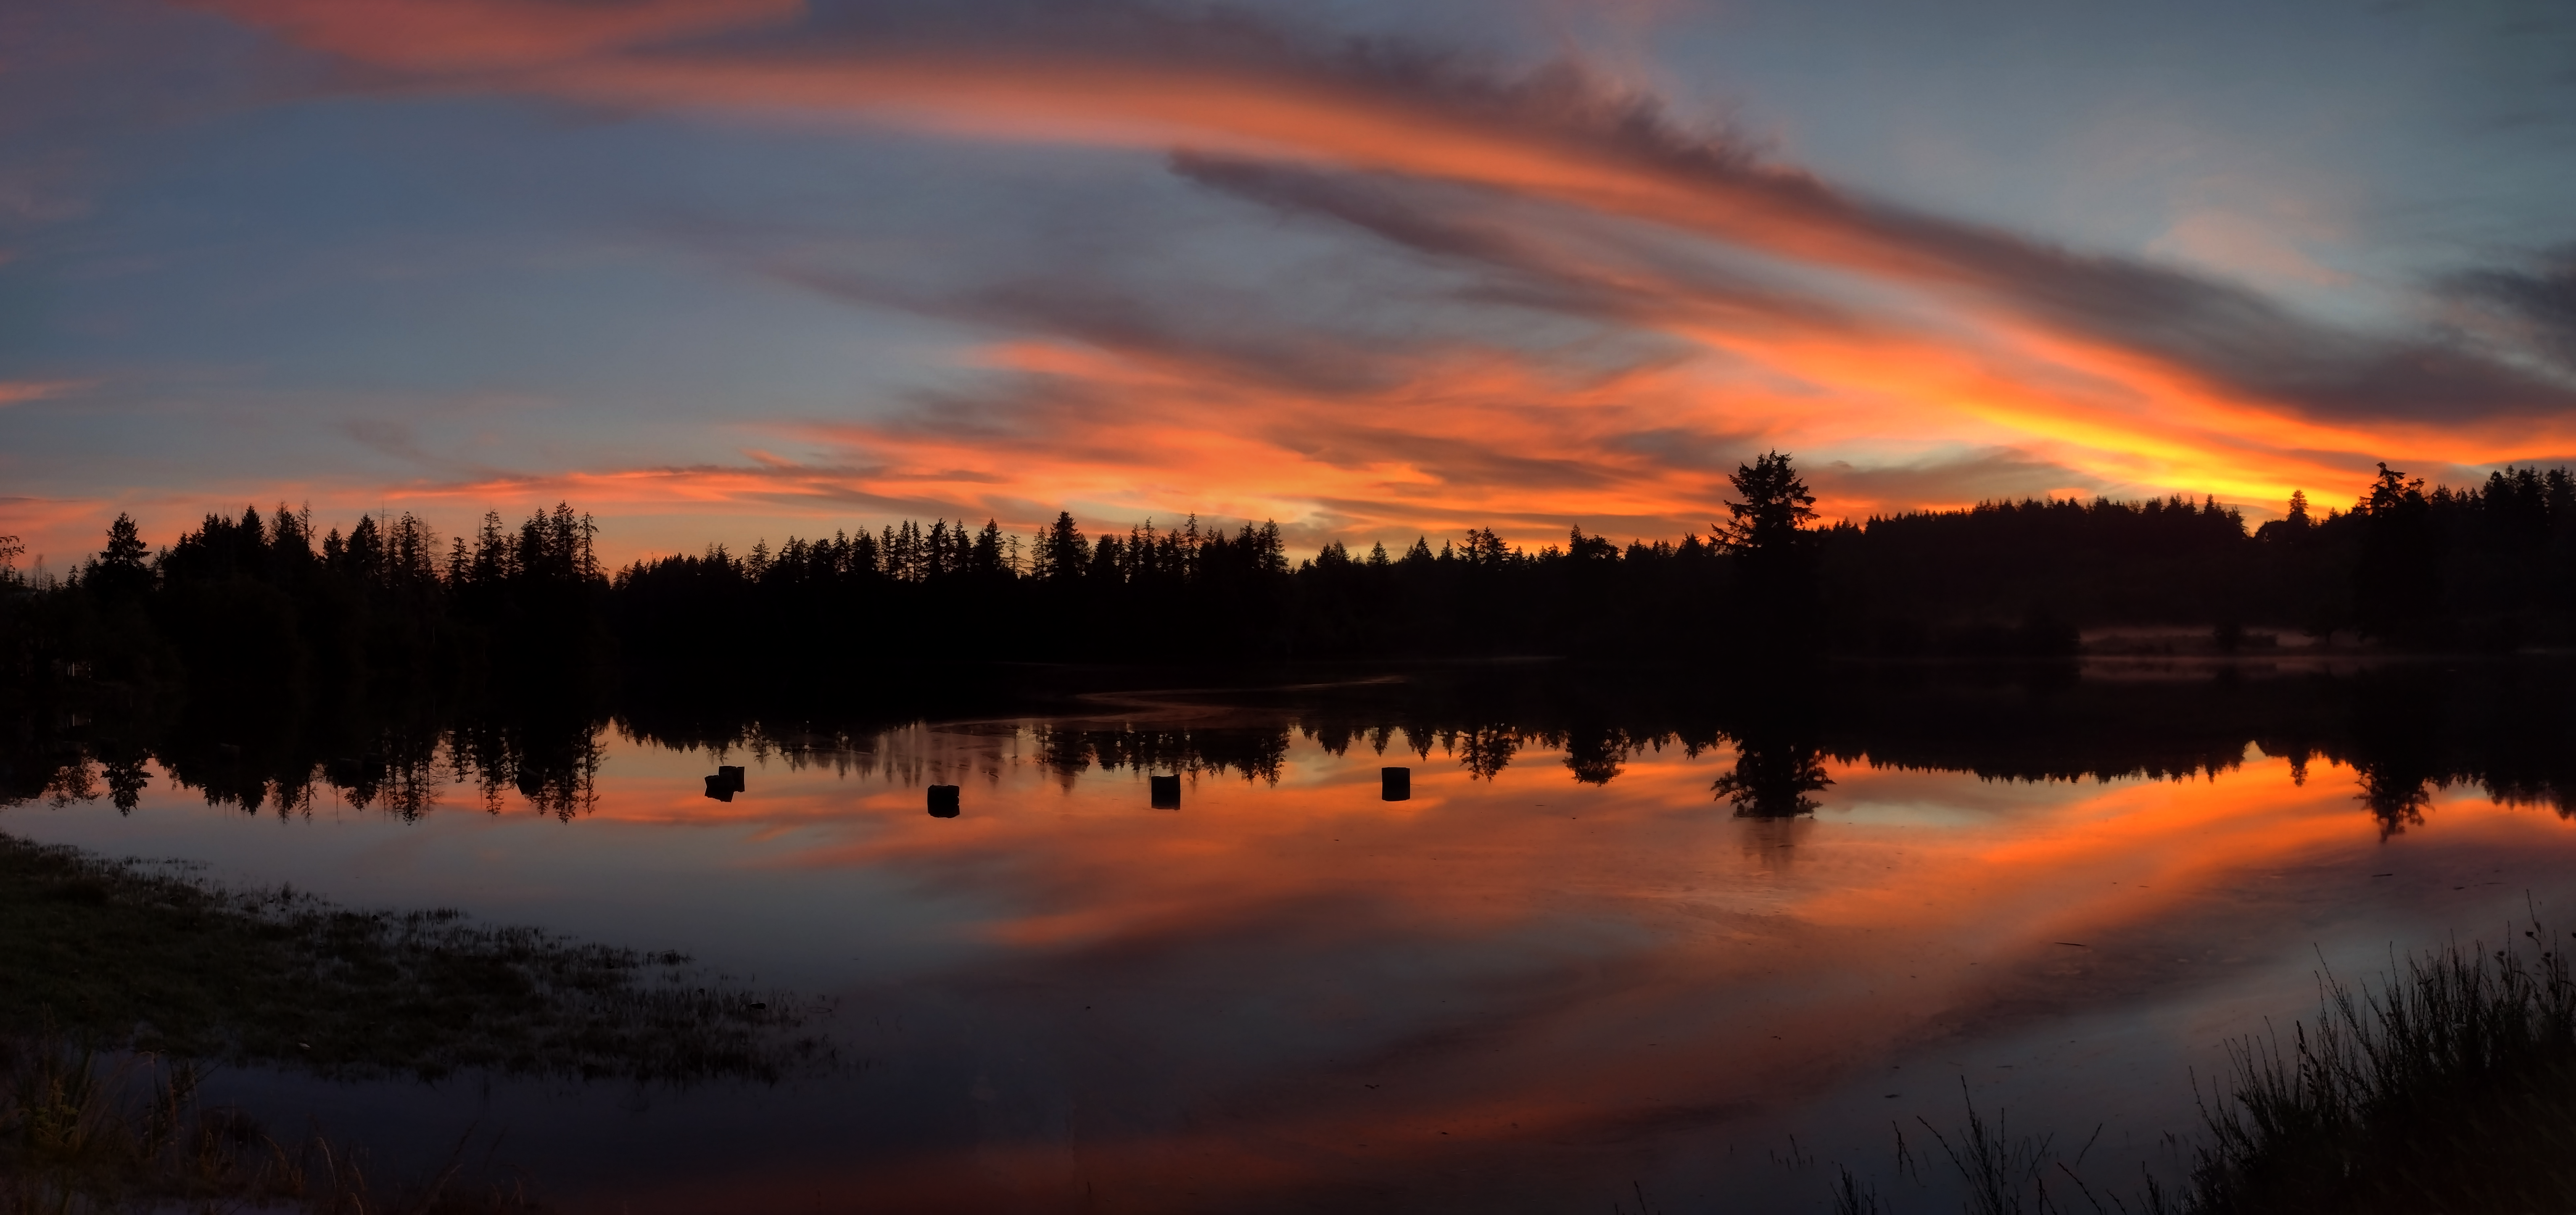 Sunrise Orange Sky Mud Bay Olympia Reflection 6128x2891